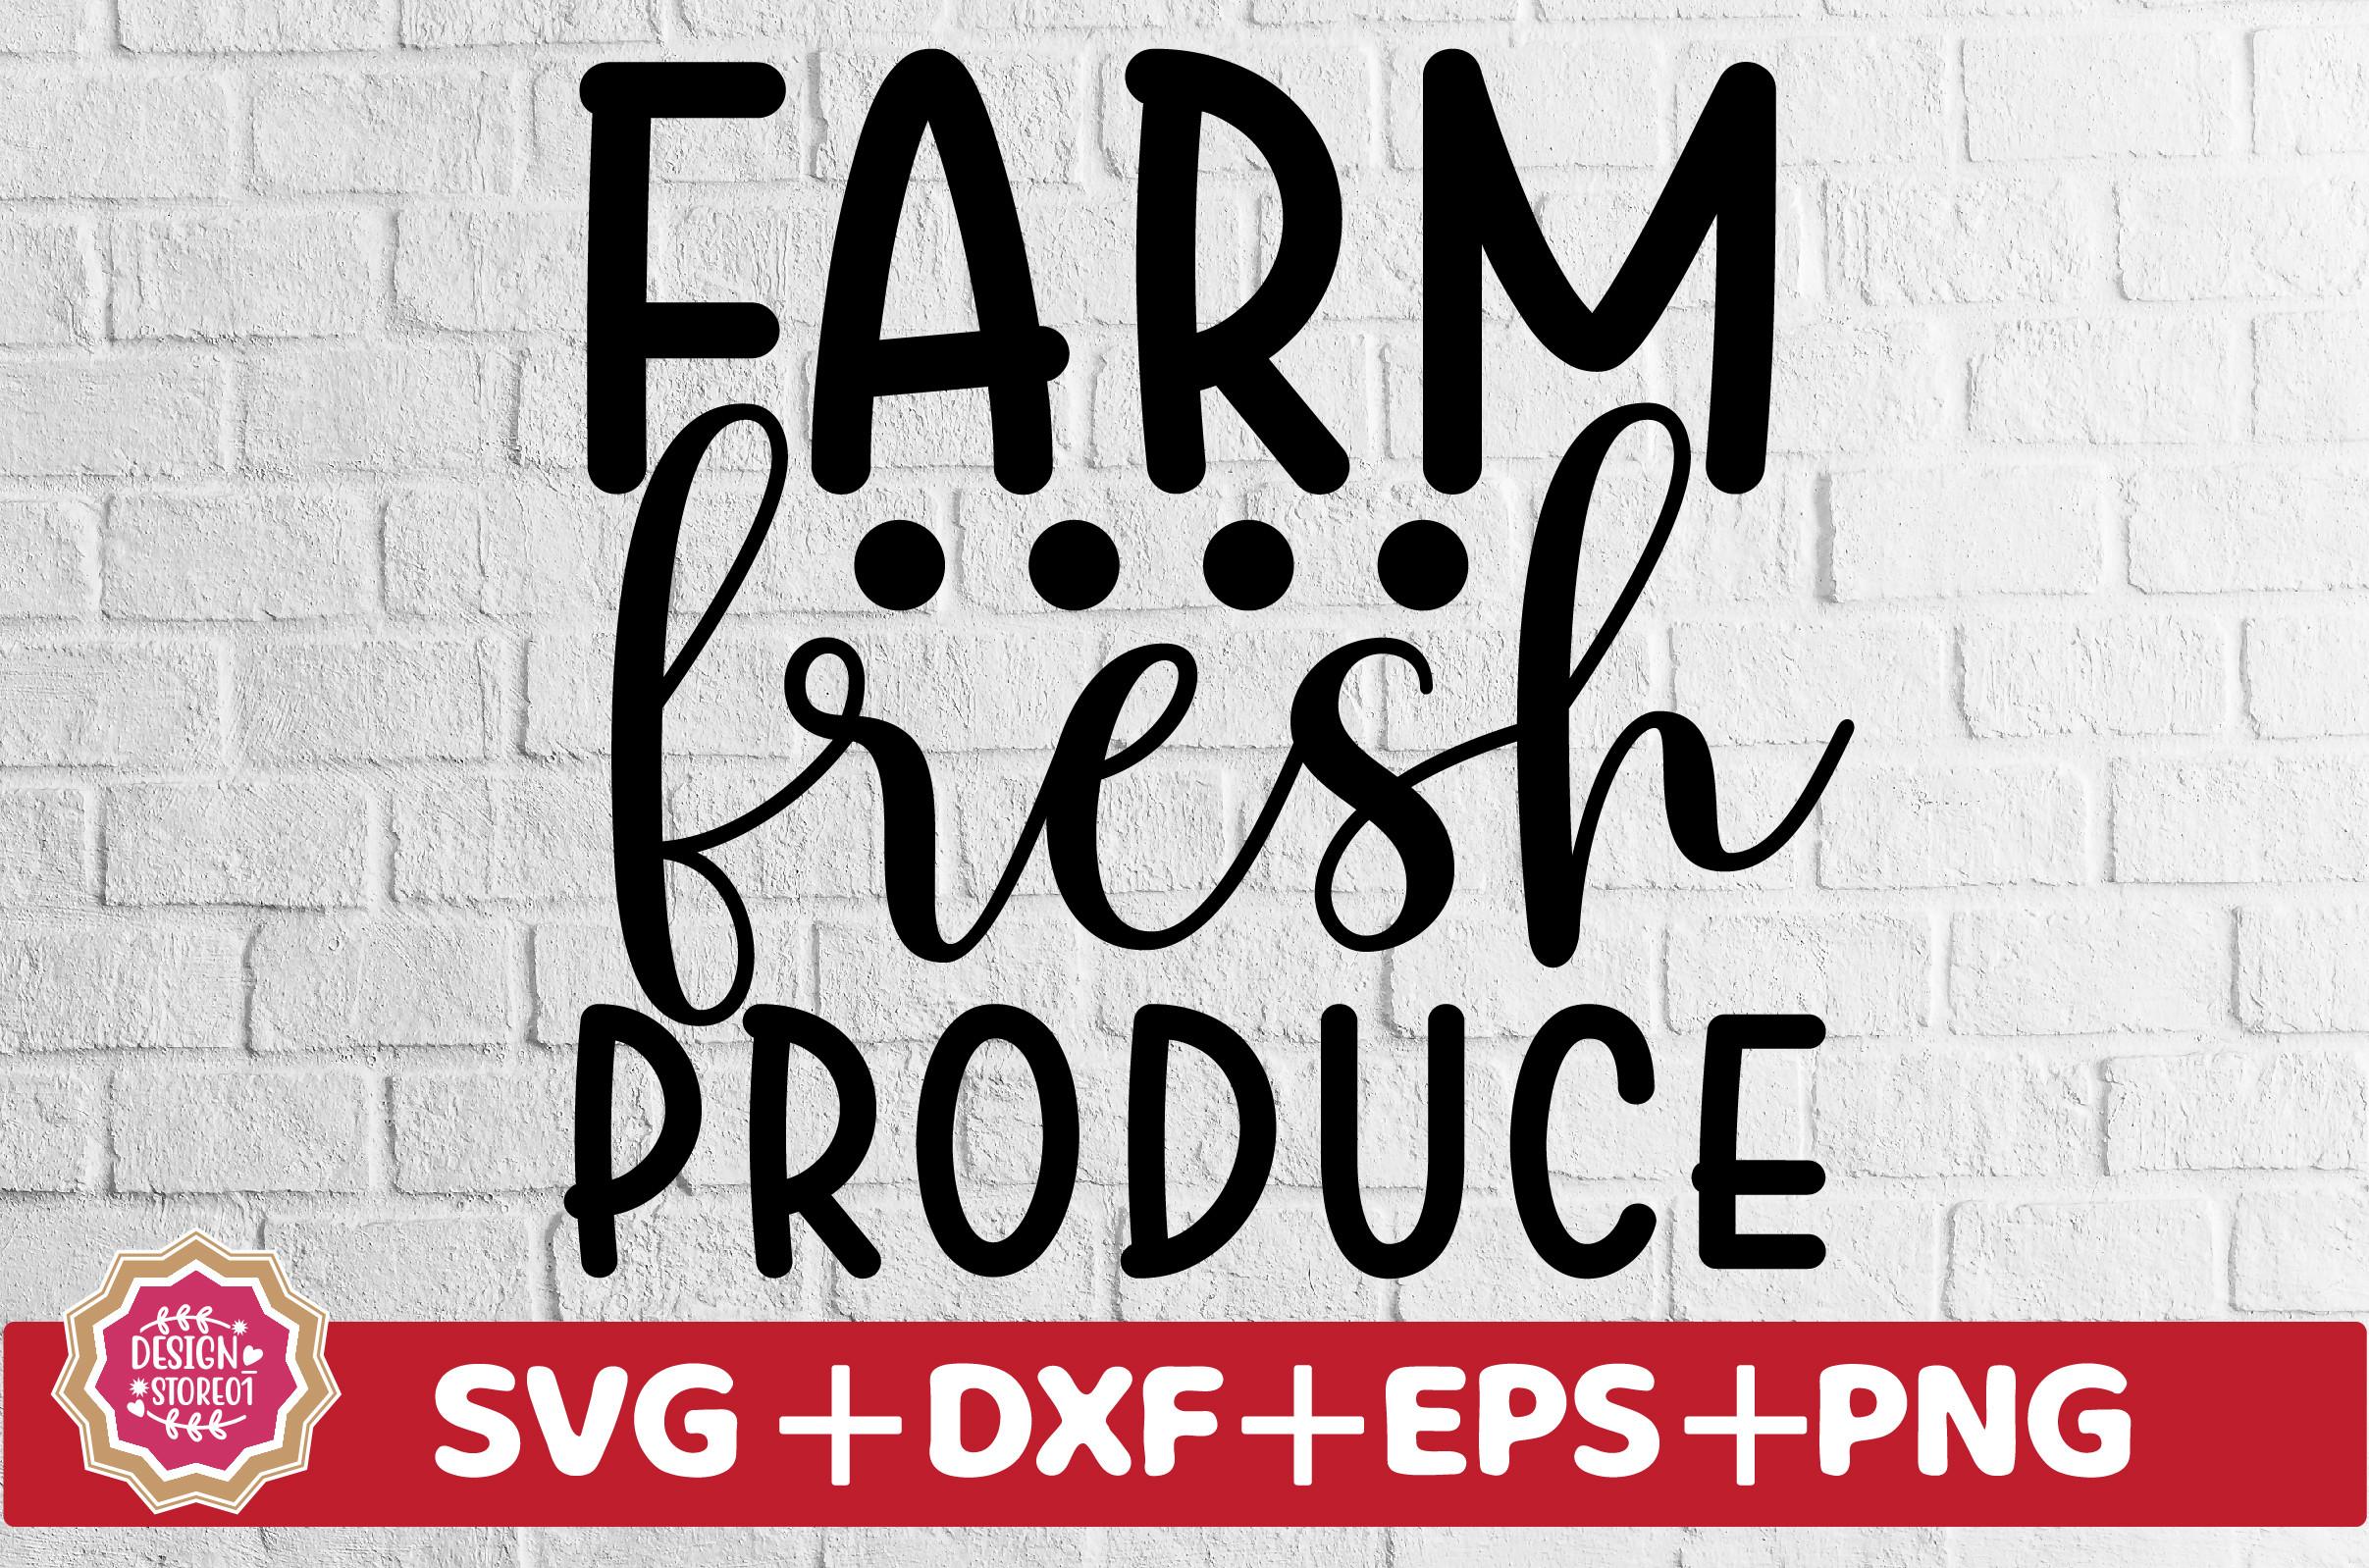 Farm Fresh Produce SVG